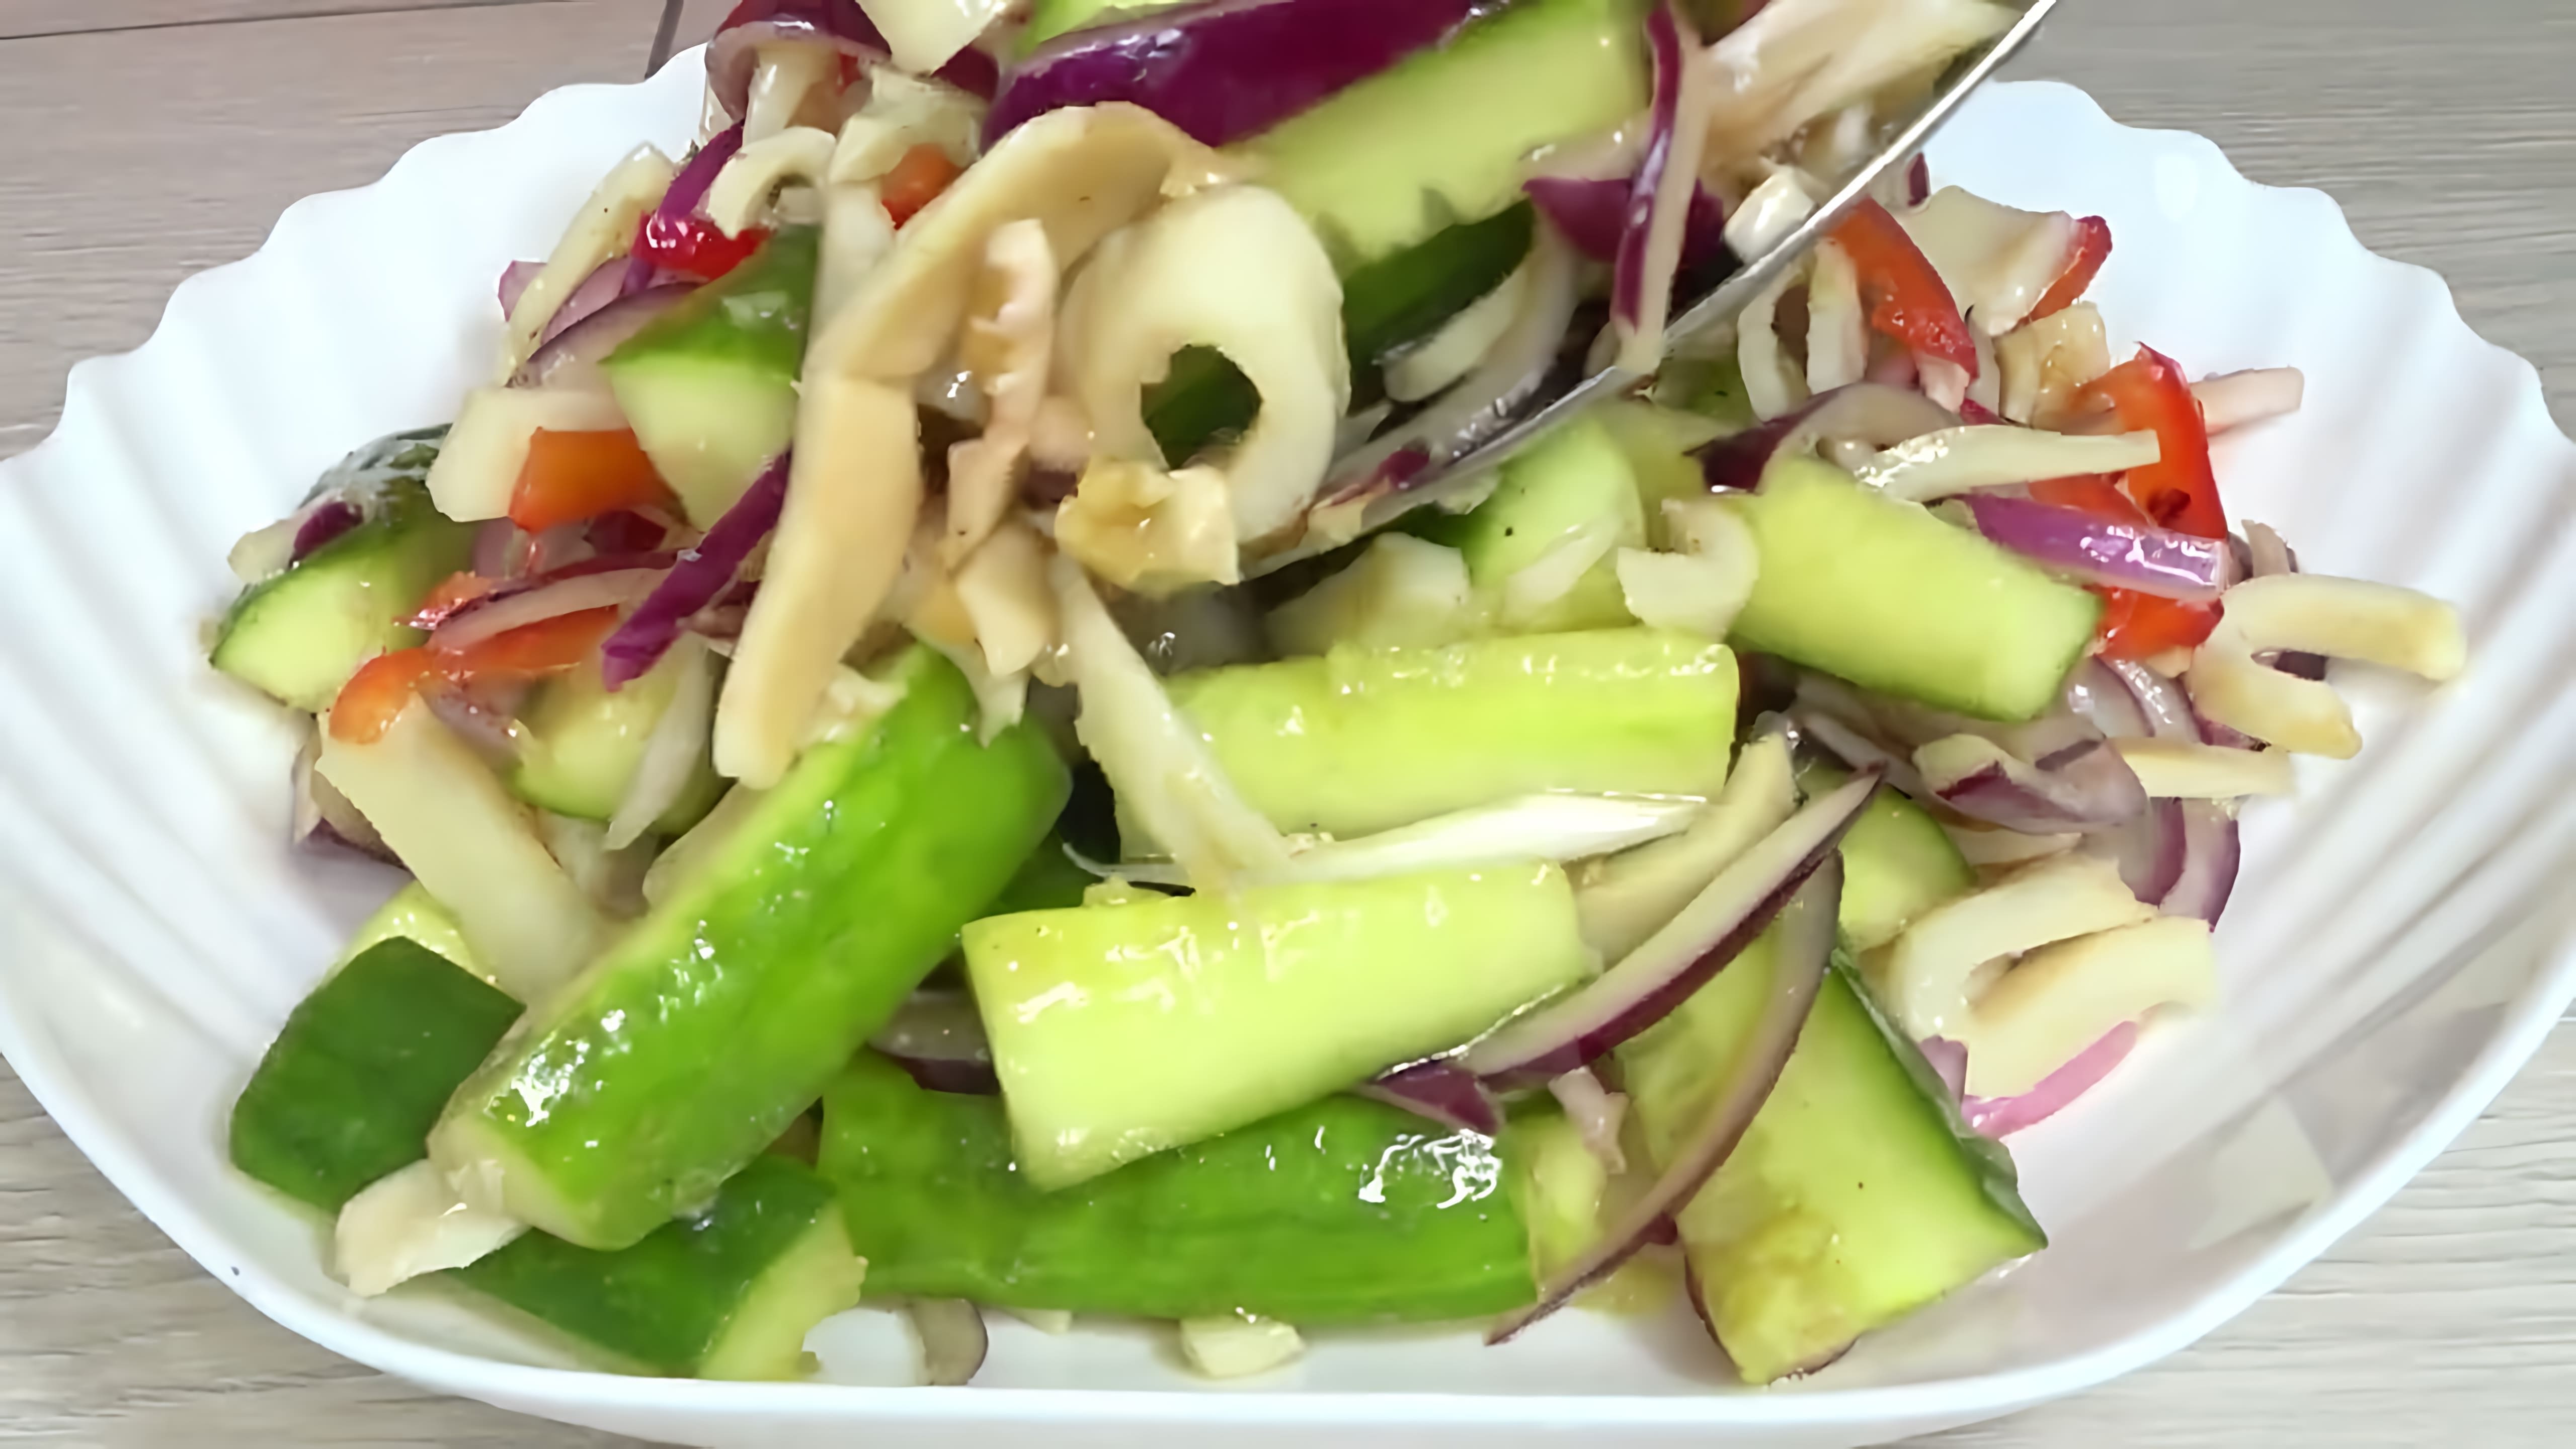 В этом видео демонстрируется рецепт приготовления салата из кальмаров с огурцом без использования майонеза